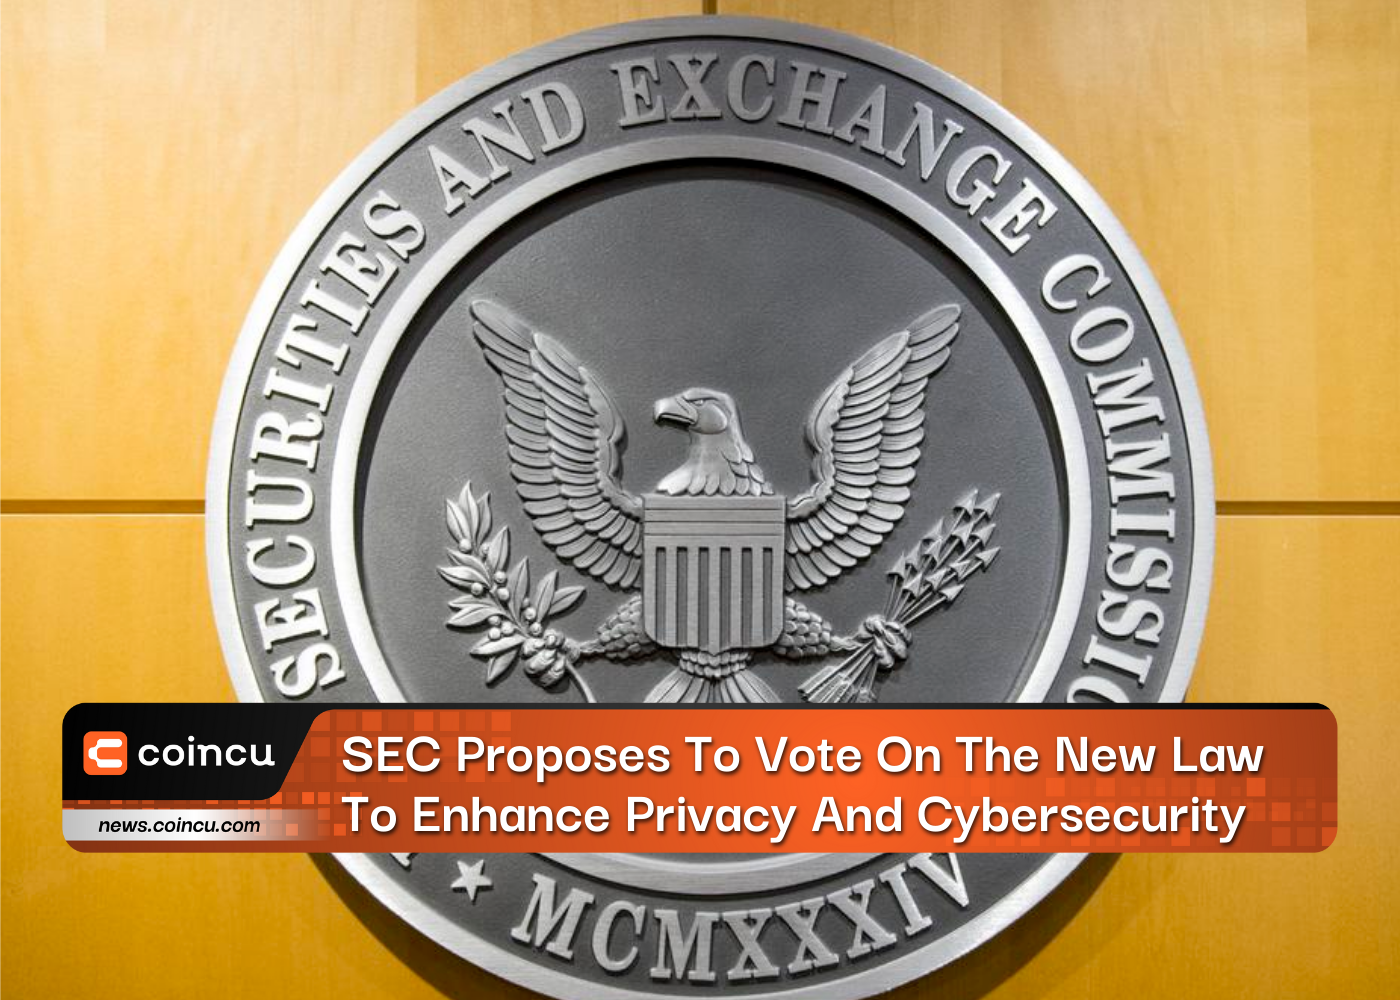 एसईसी ने गोपनीयता और साइबर सुरक्षा बढ़ाने के लिए नए कानून पर मतदान करने का प्रस्ताव रखा है